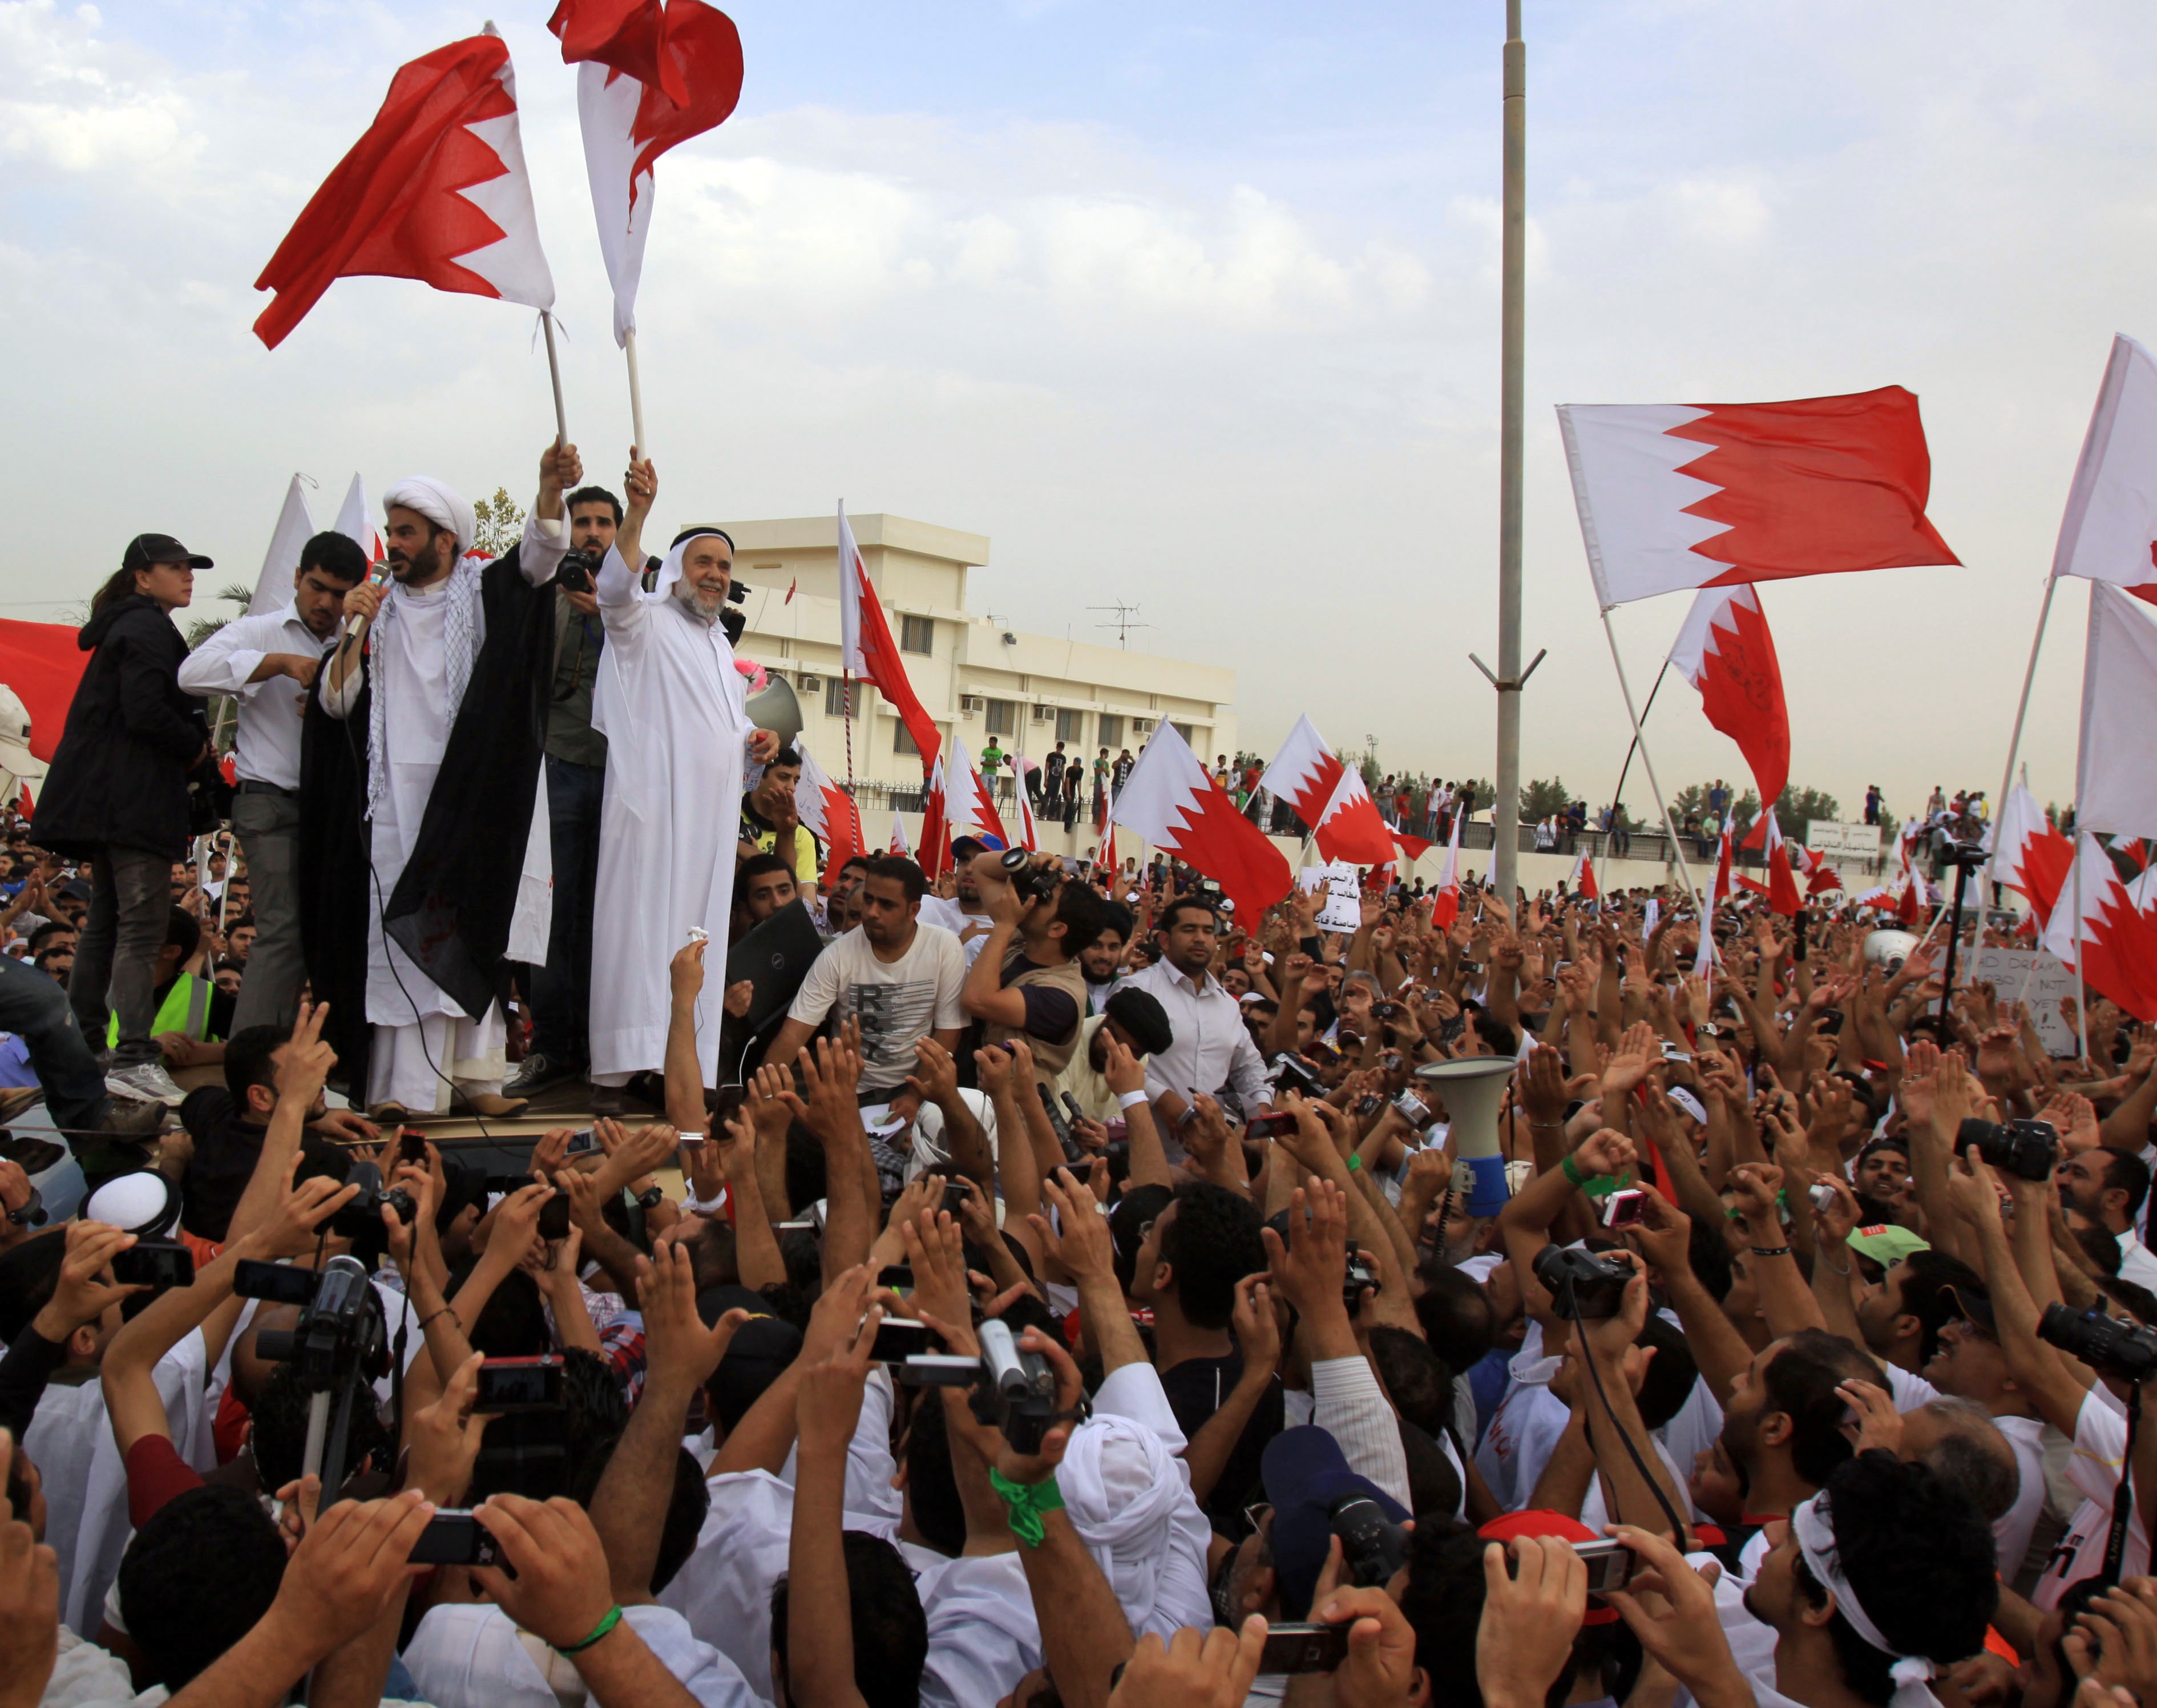 Protester, Jasminrevolutionen, Livstid, Bahrain, UD, Sverige, Fängelse, Mänskliga rättigheter